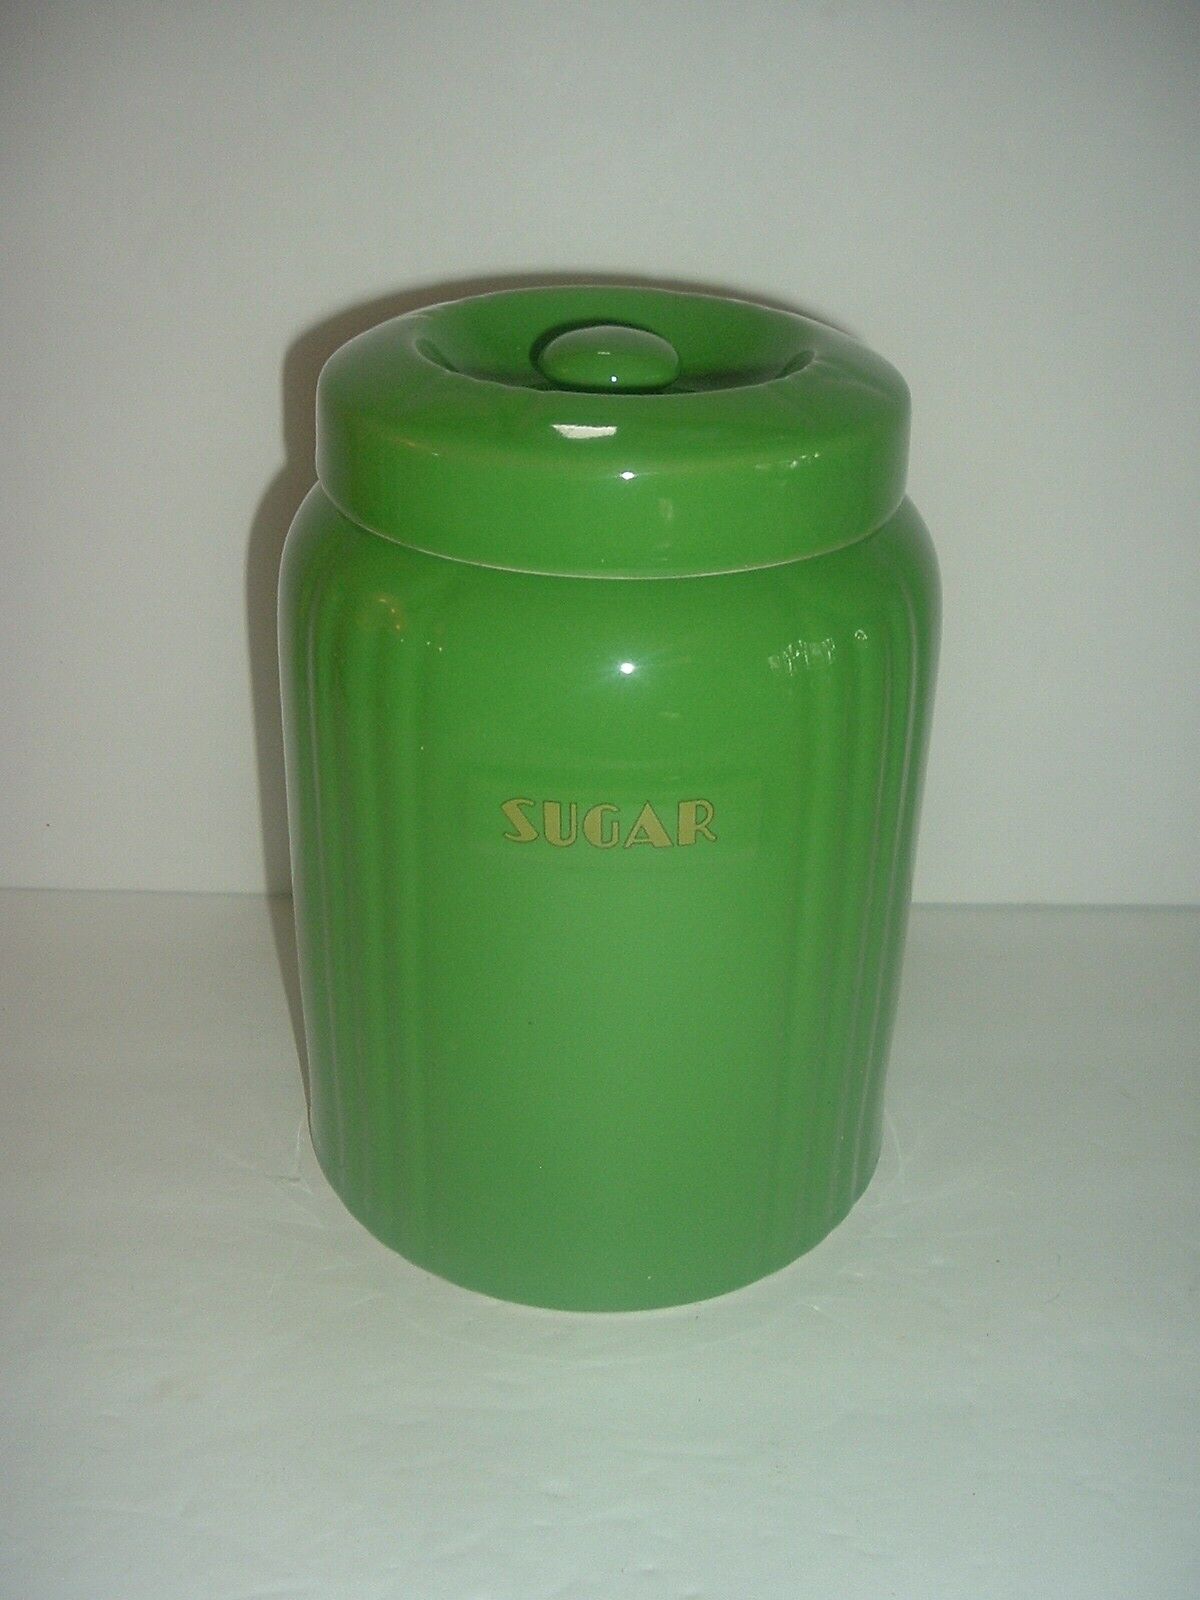 Hall Green Radiance Sugar Jar Canister Vintage